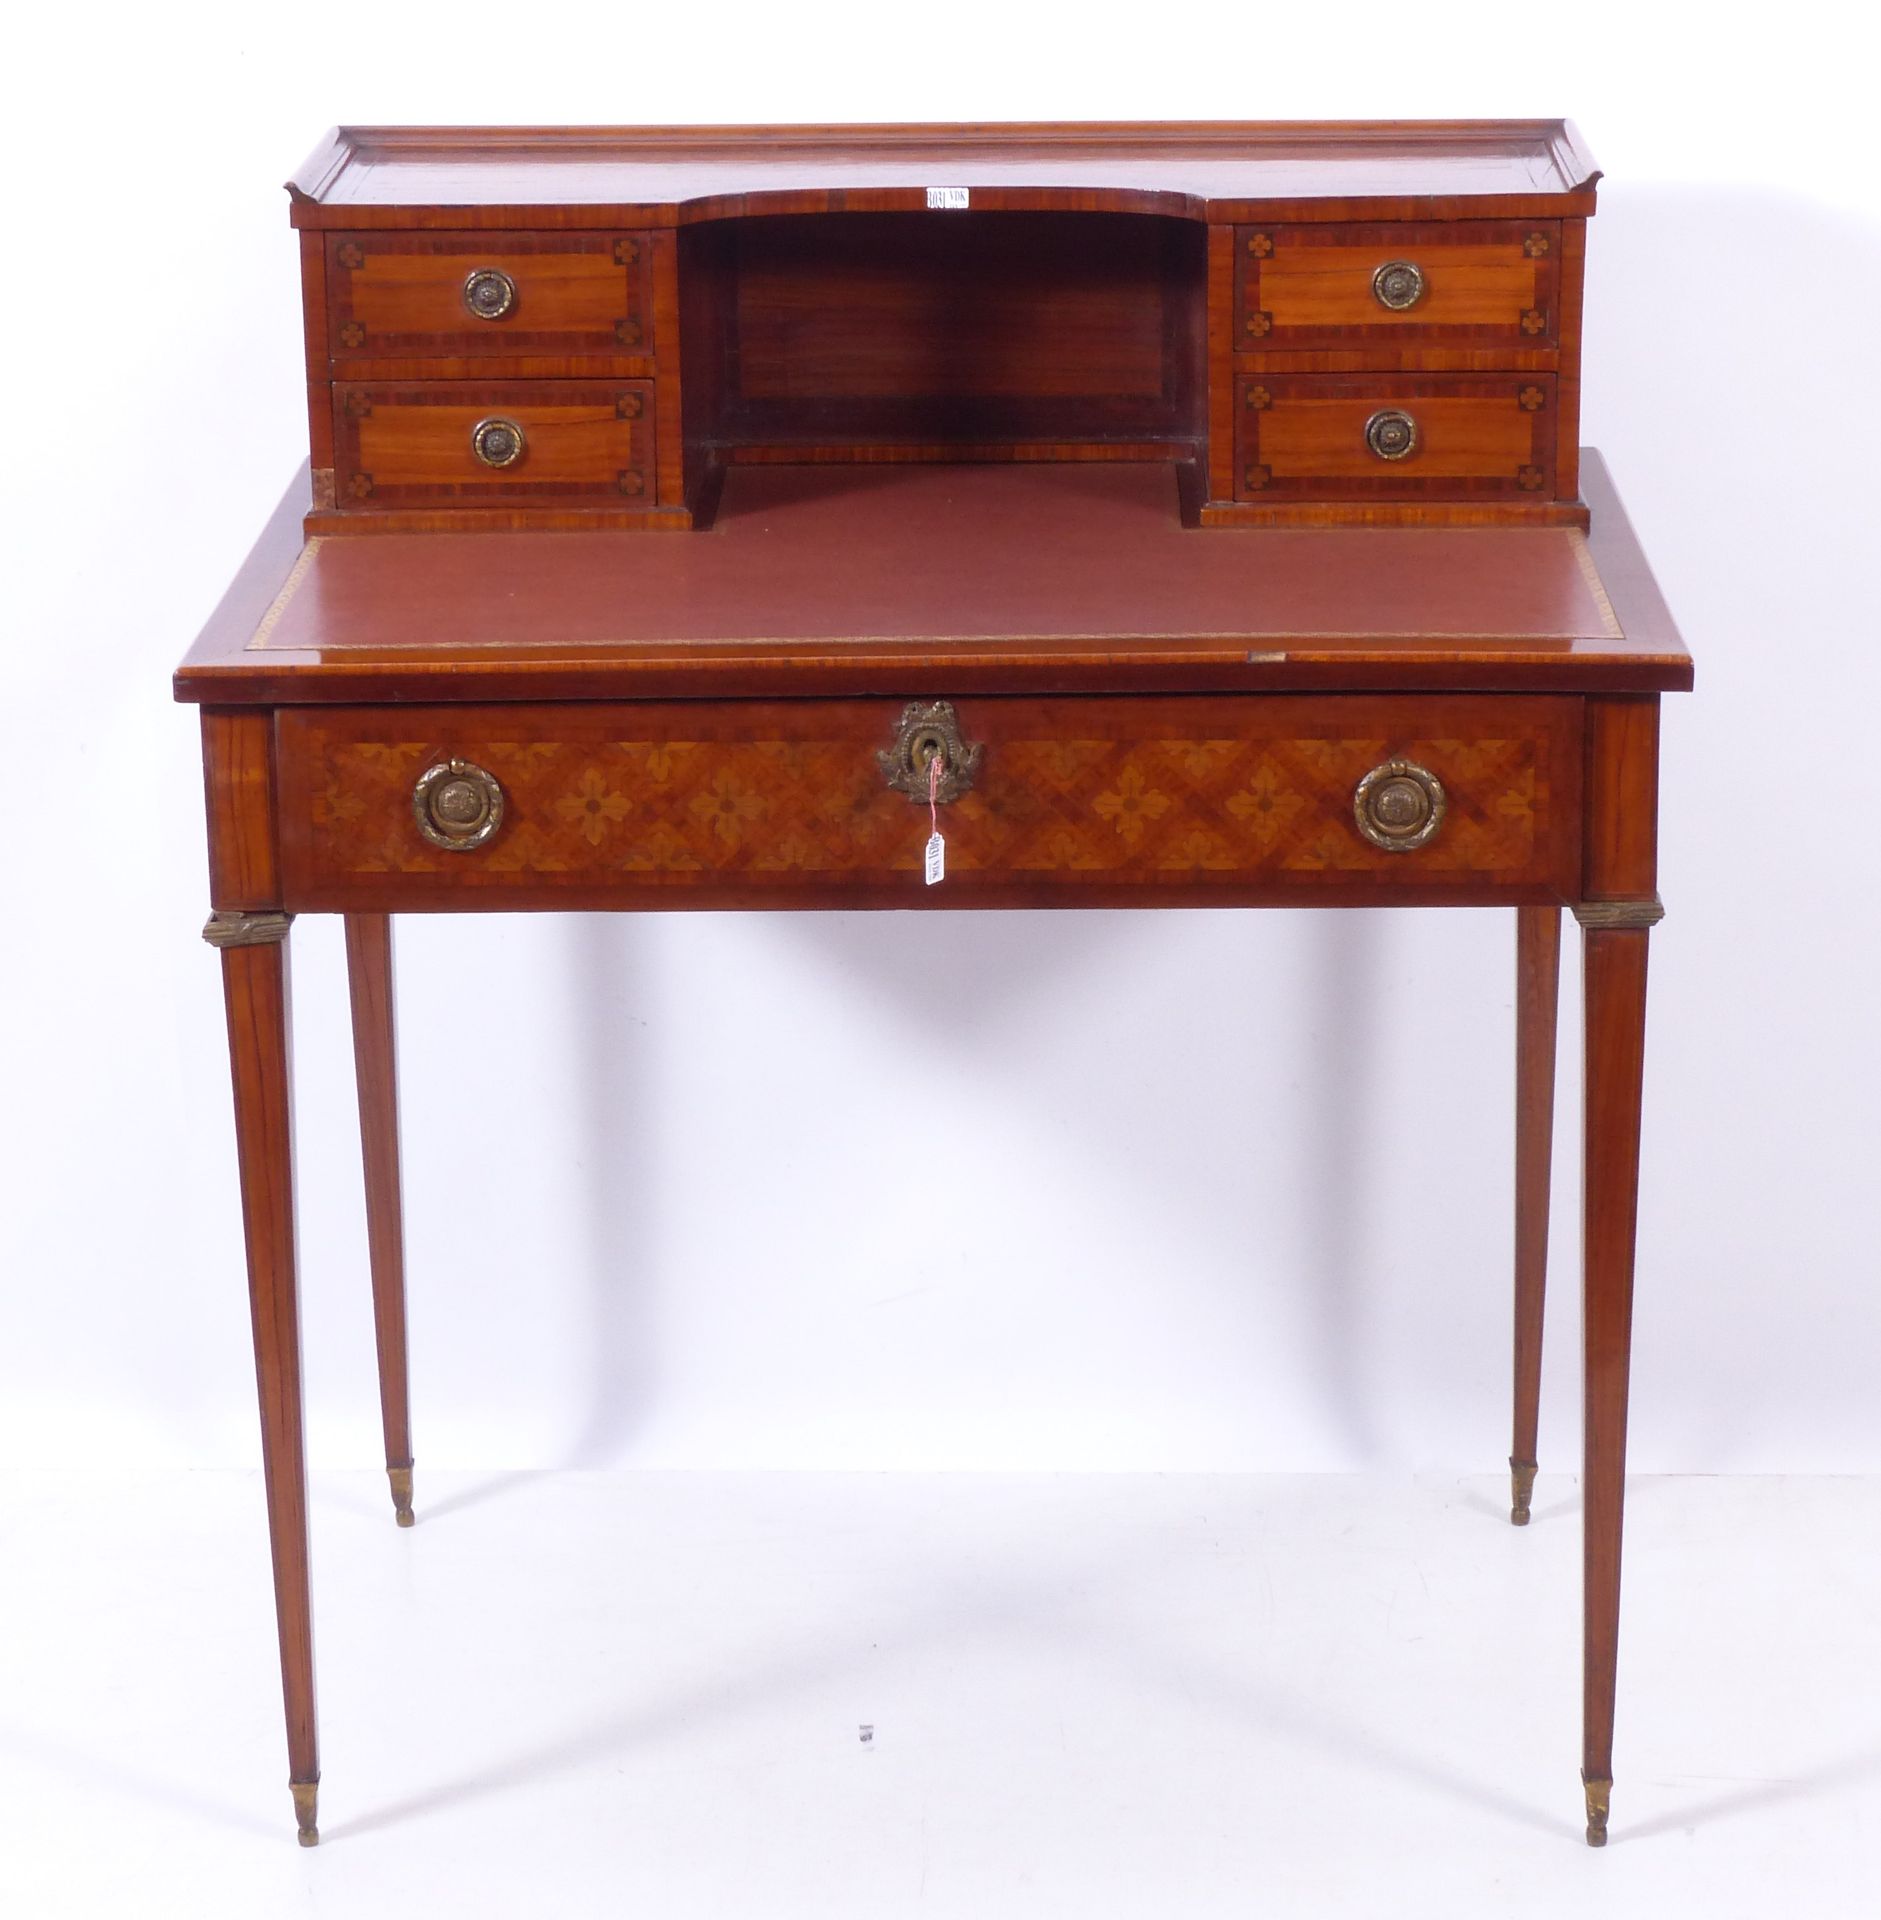 Null 路易十六风格的镶嵌式小女式书桌。年代：19世纪。尺寸：85x54.5x96厘米。